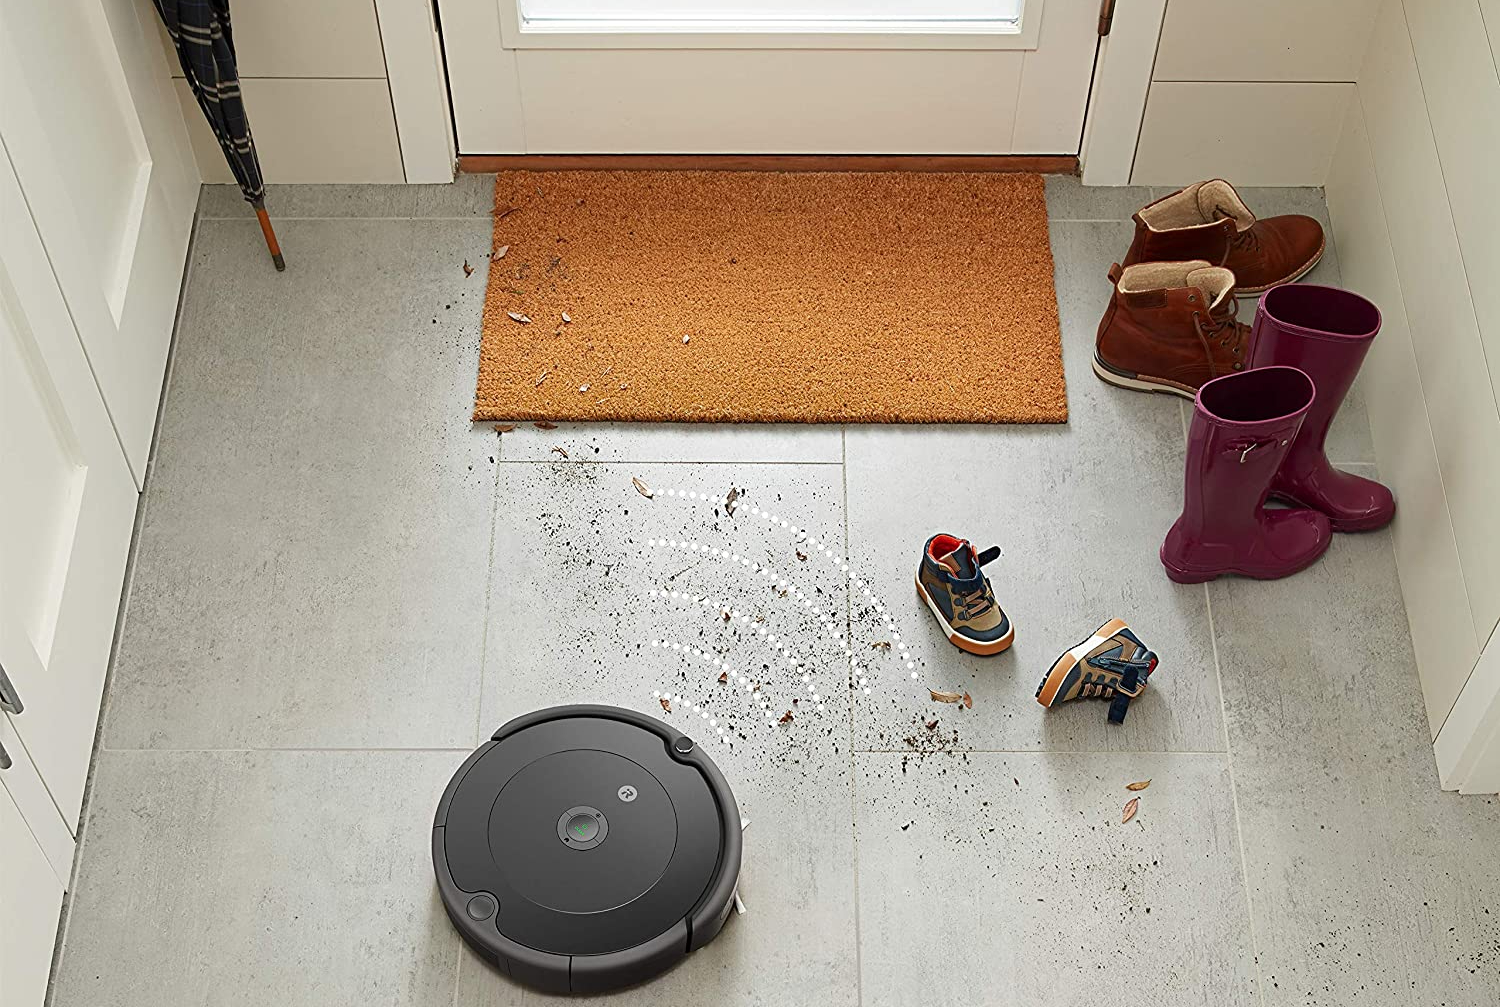 Roomba® 692 Robot Vacuum, iRobot